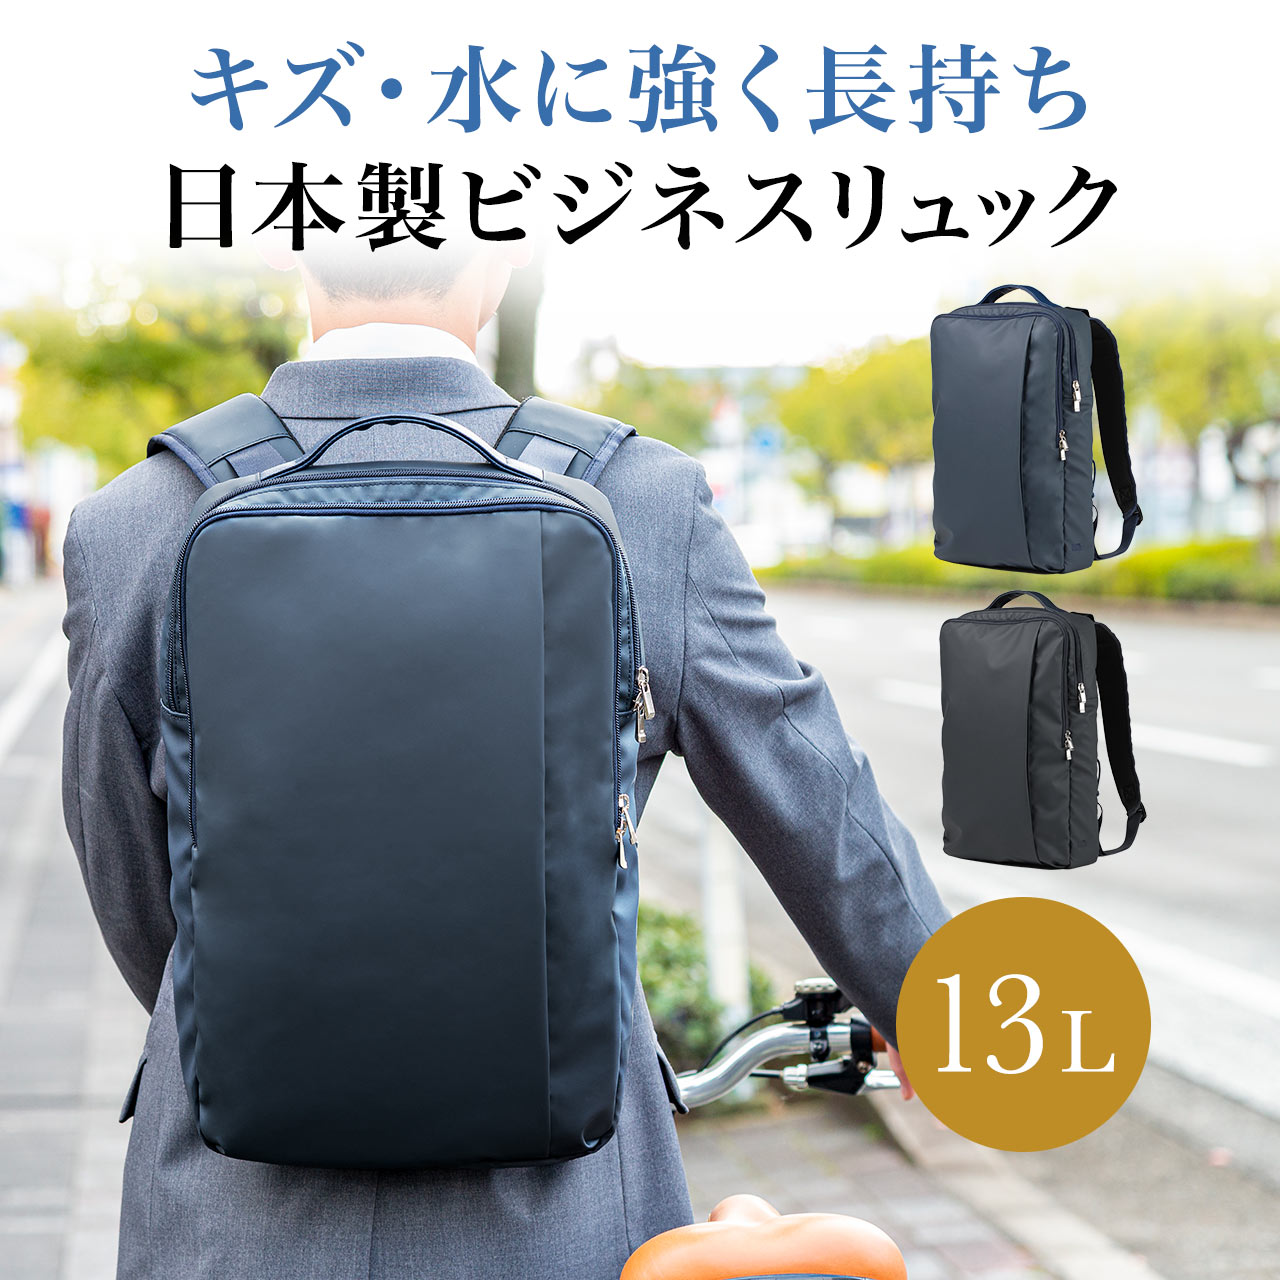 日本専門店 ビジネスリュック メンズ リュック リュックサック ビジネスバッグ 日本製 高耐久 簡易防水 撥水 大容量 通勤 40代 50代 パソコン バッグ